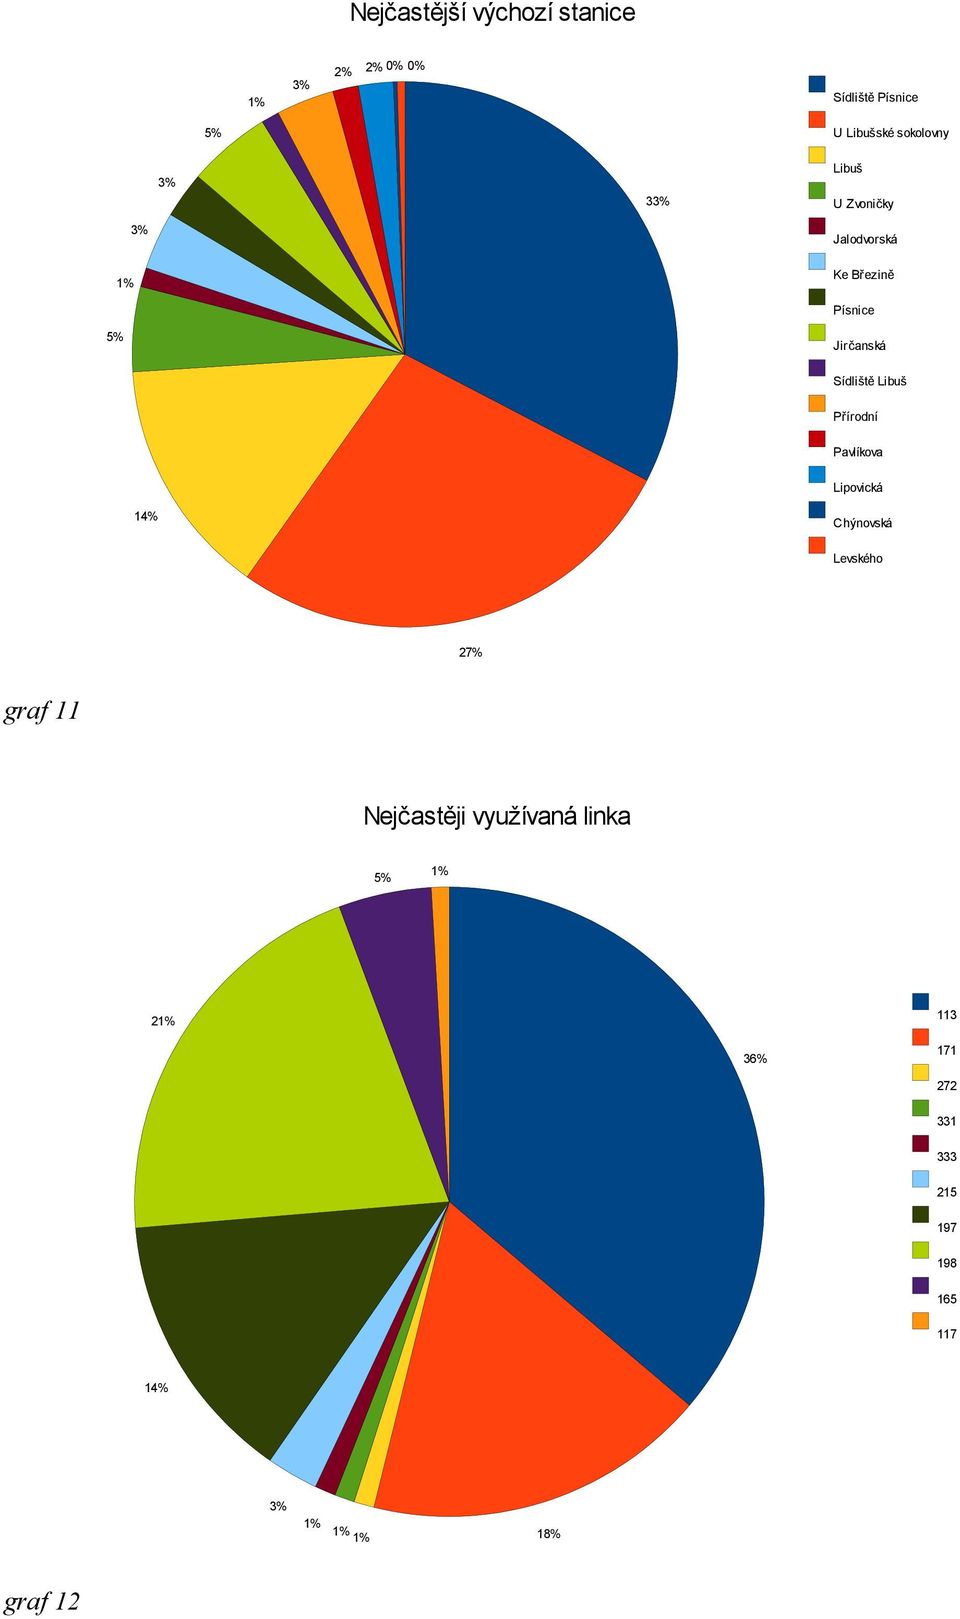 Libuš Přírodní Pavlíkova Lipovická 14% Chýnovská Levského 27% graf 11 Nejčastěji